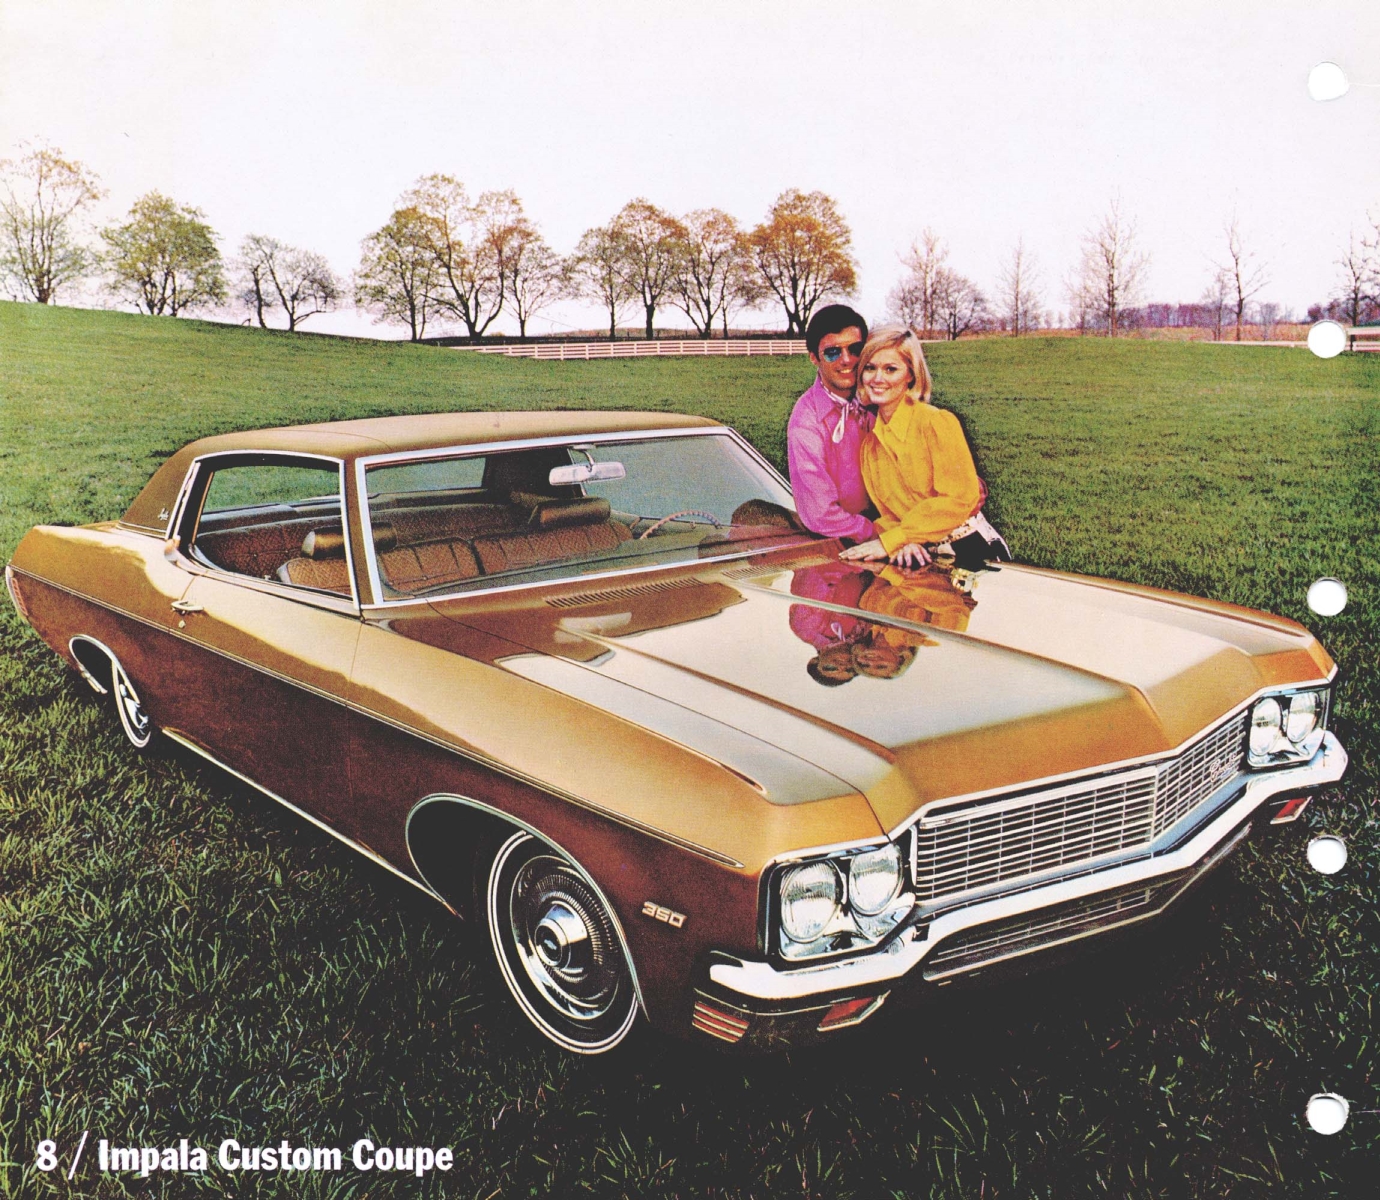 1970_Chevrolet_Dealer_Album-01-08